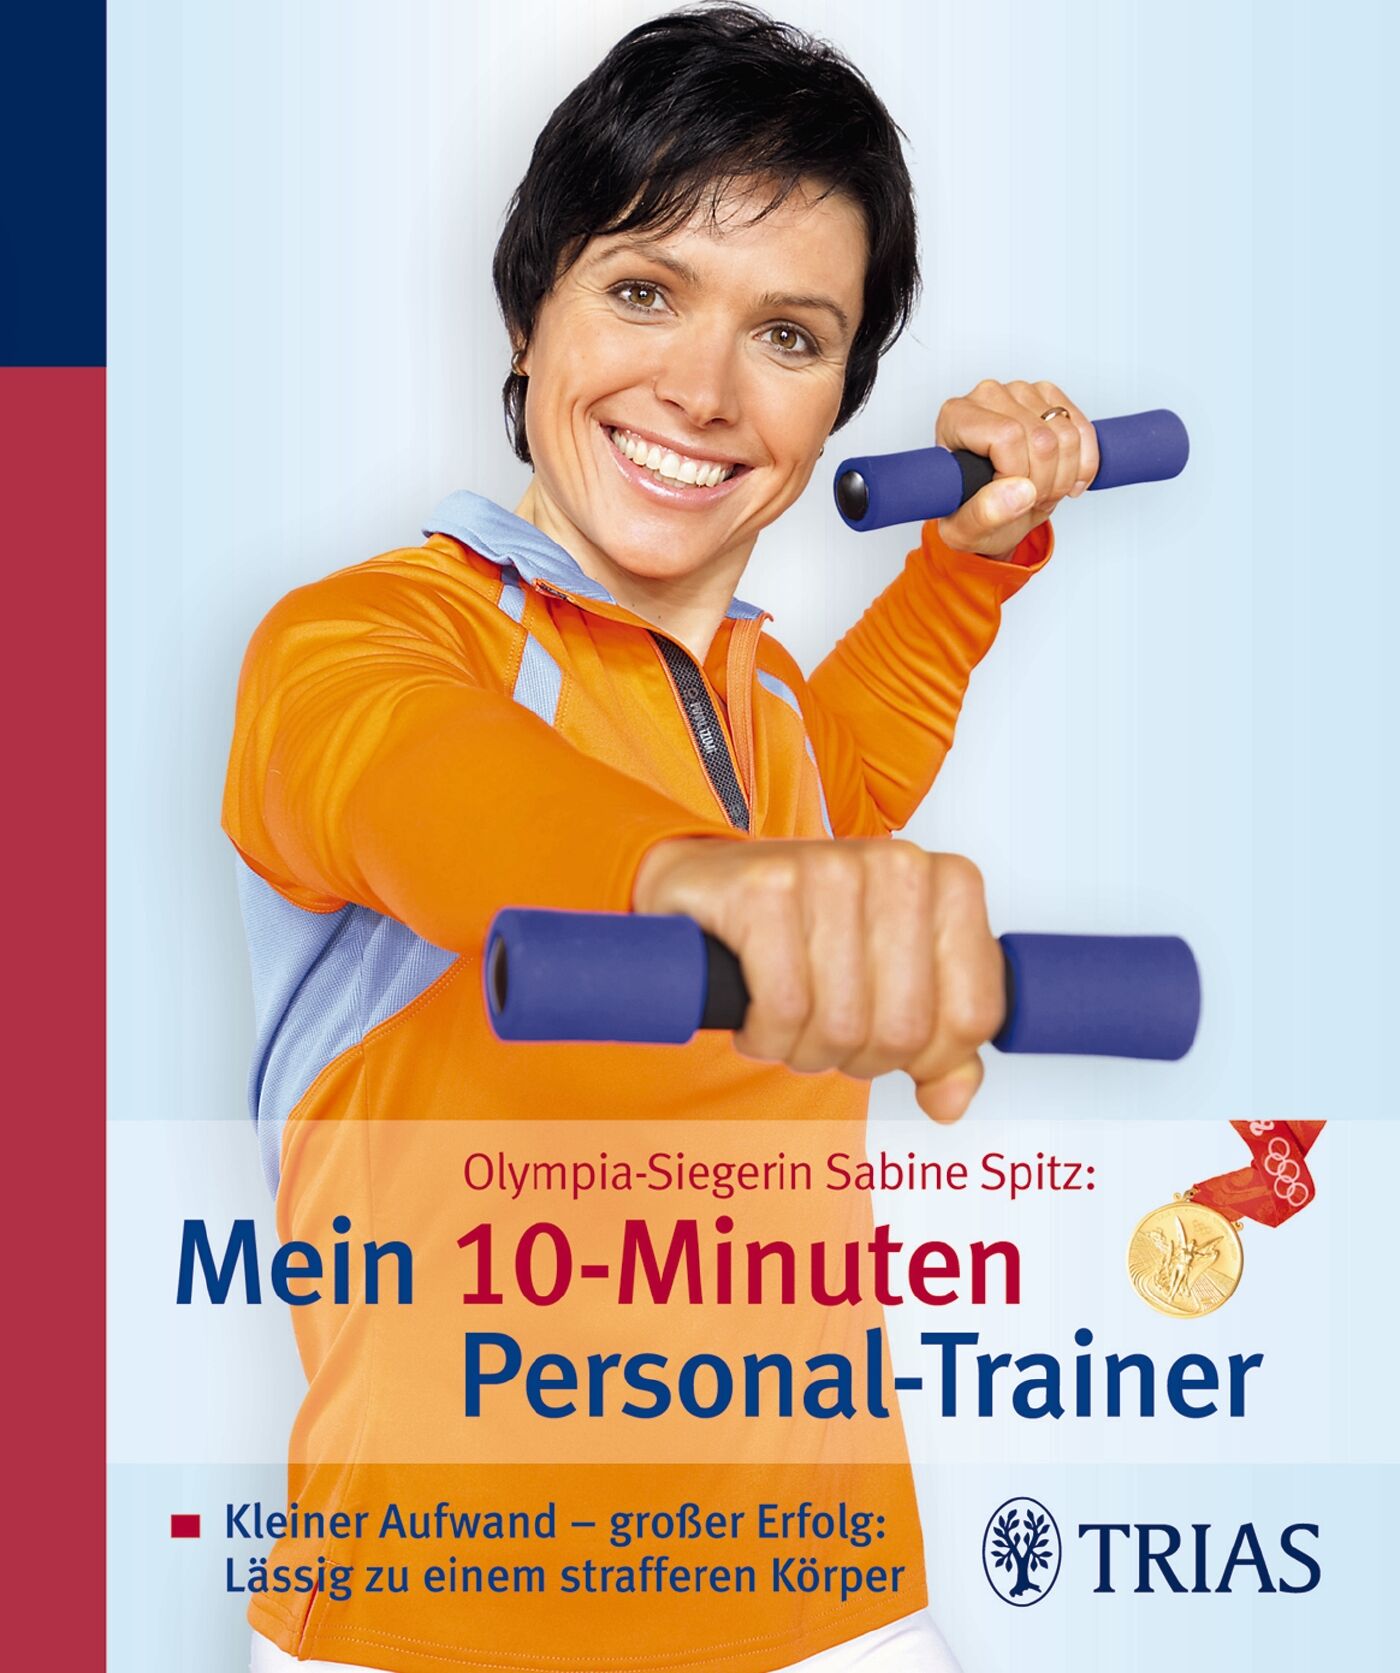 Olympia-Siegerin Sabine Spitz: Mein 10-Minuten Personal-Trainer, 9783830461869